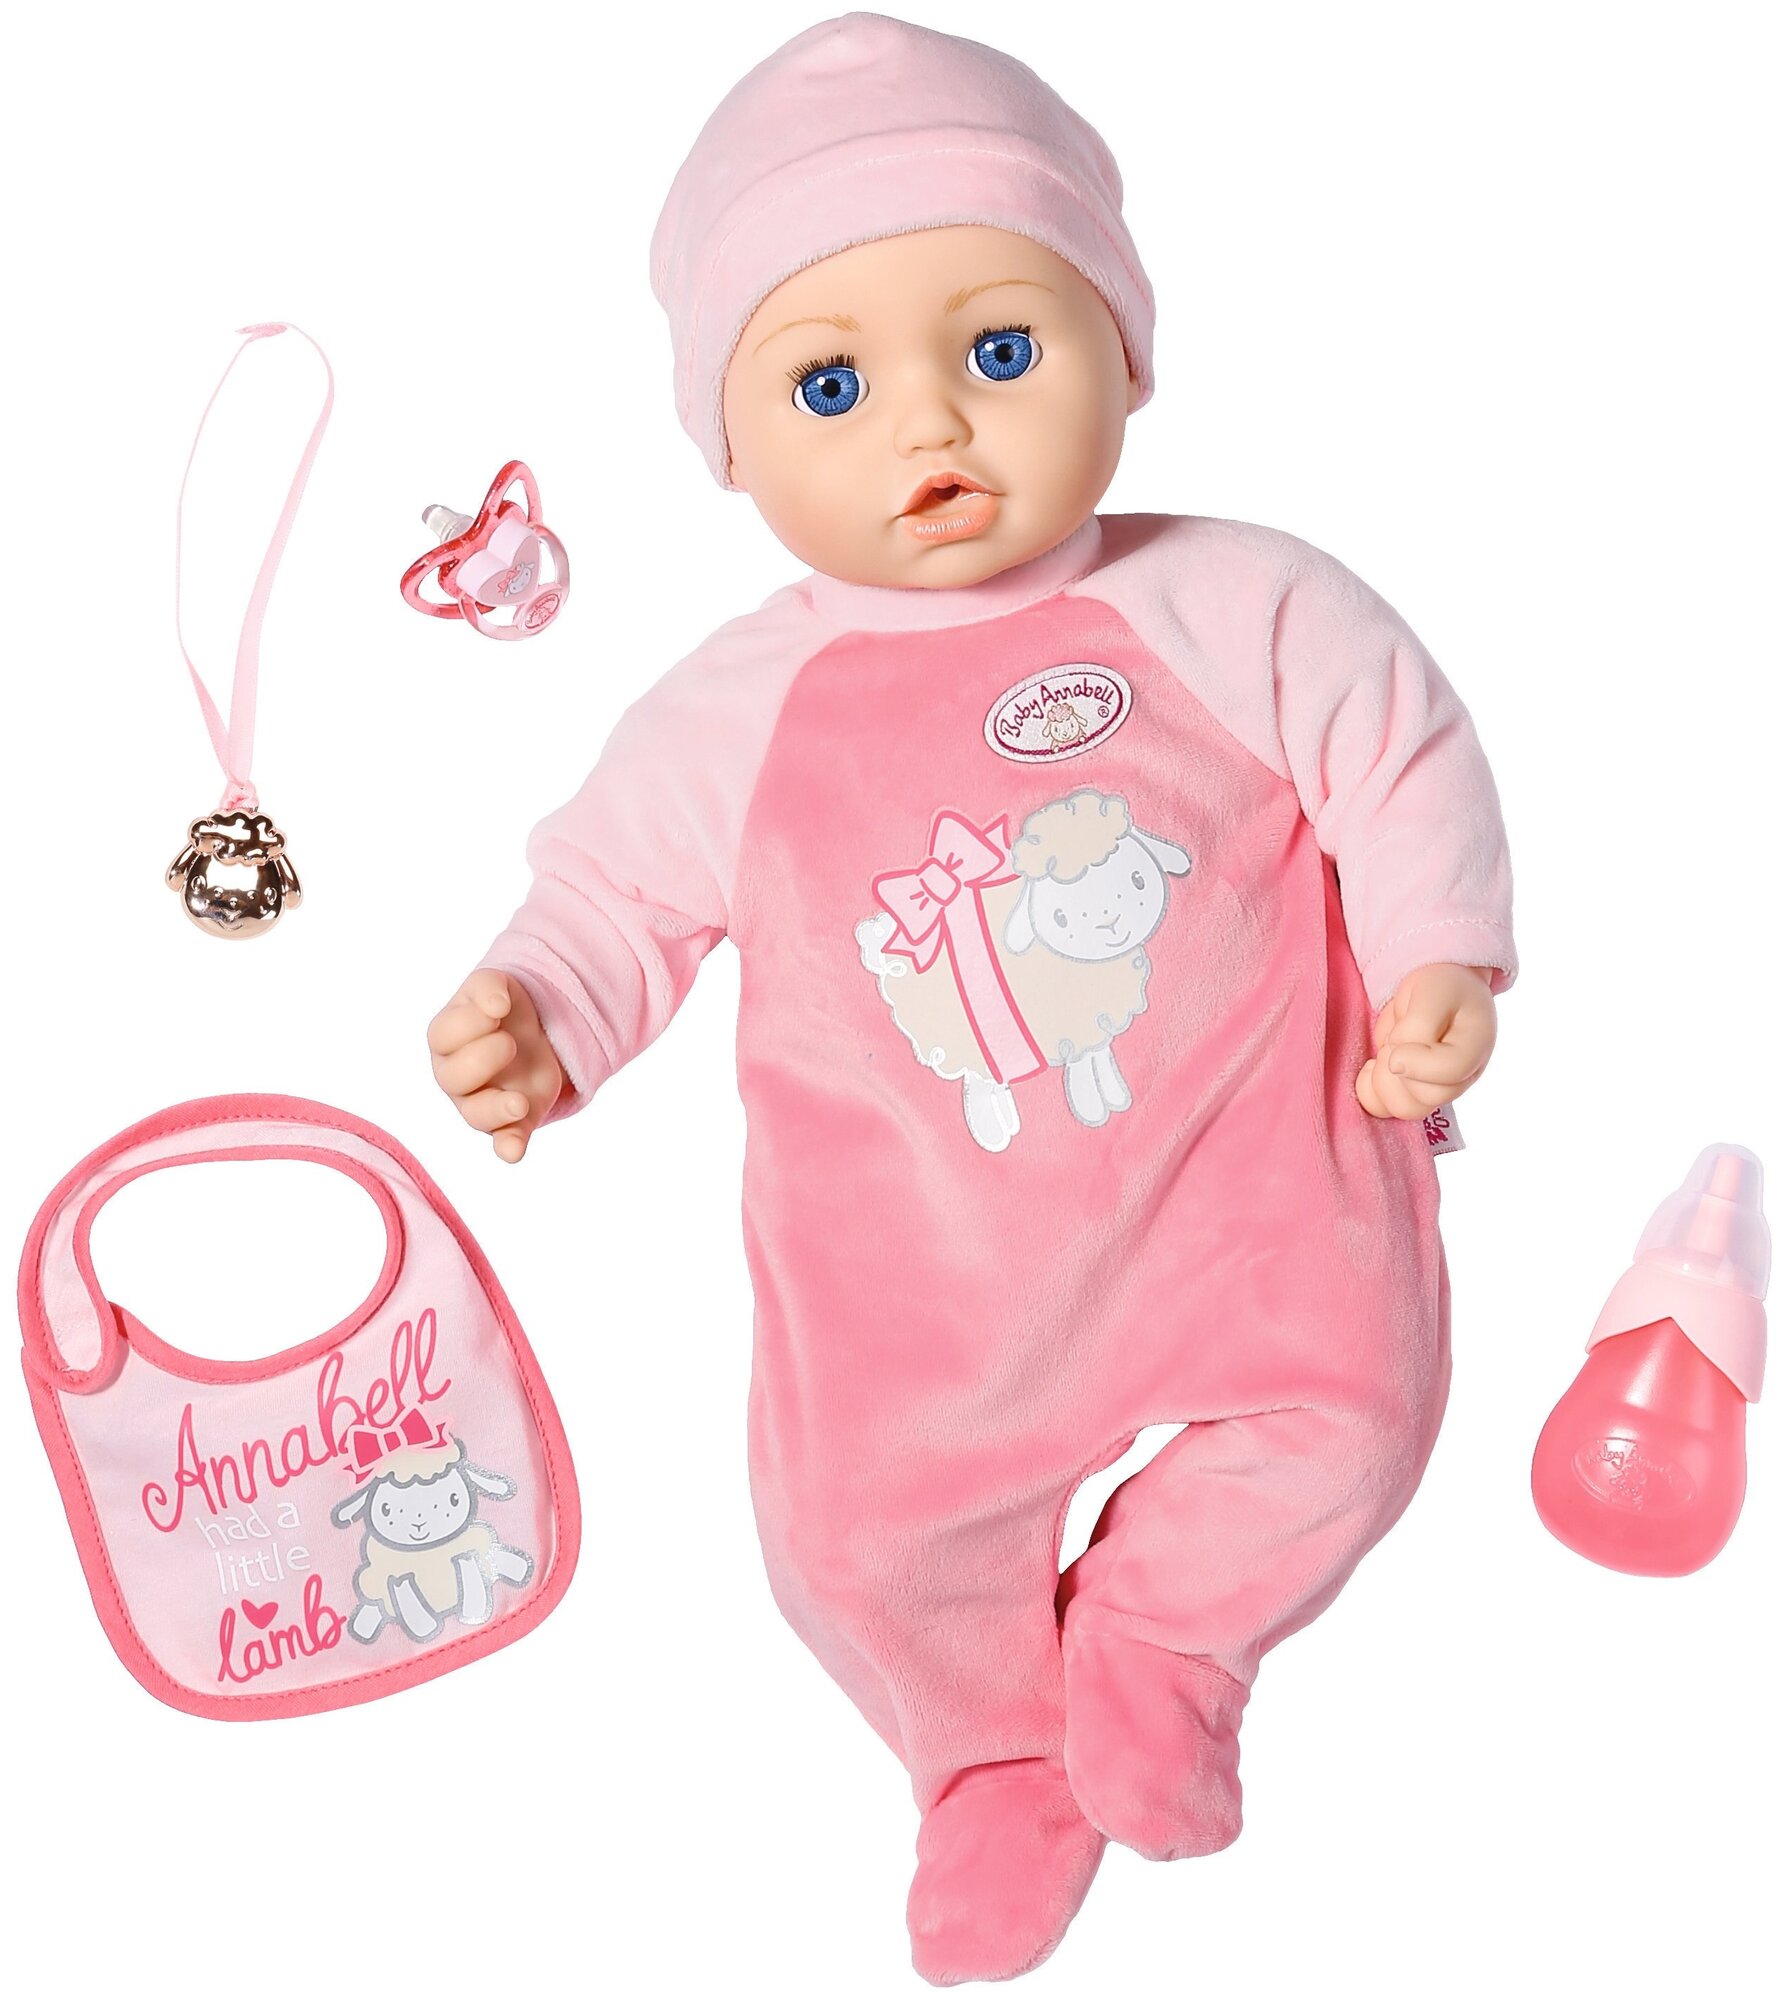 Интерактивная кукла Zapf Creation Baby Annabell, 43 см, 706-367 бордовый